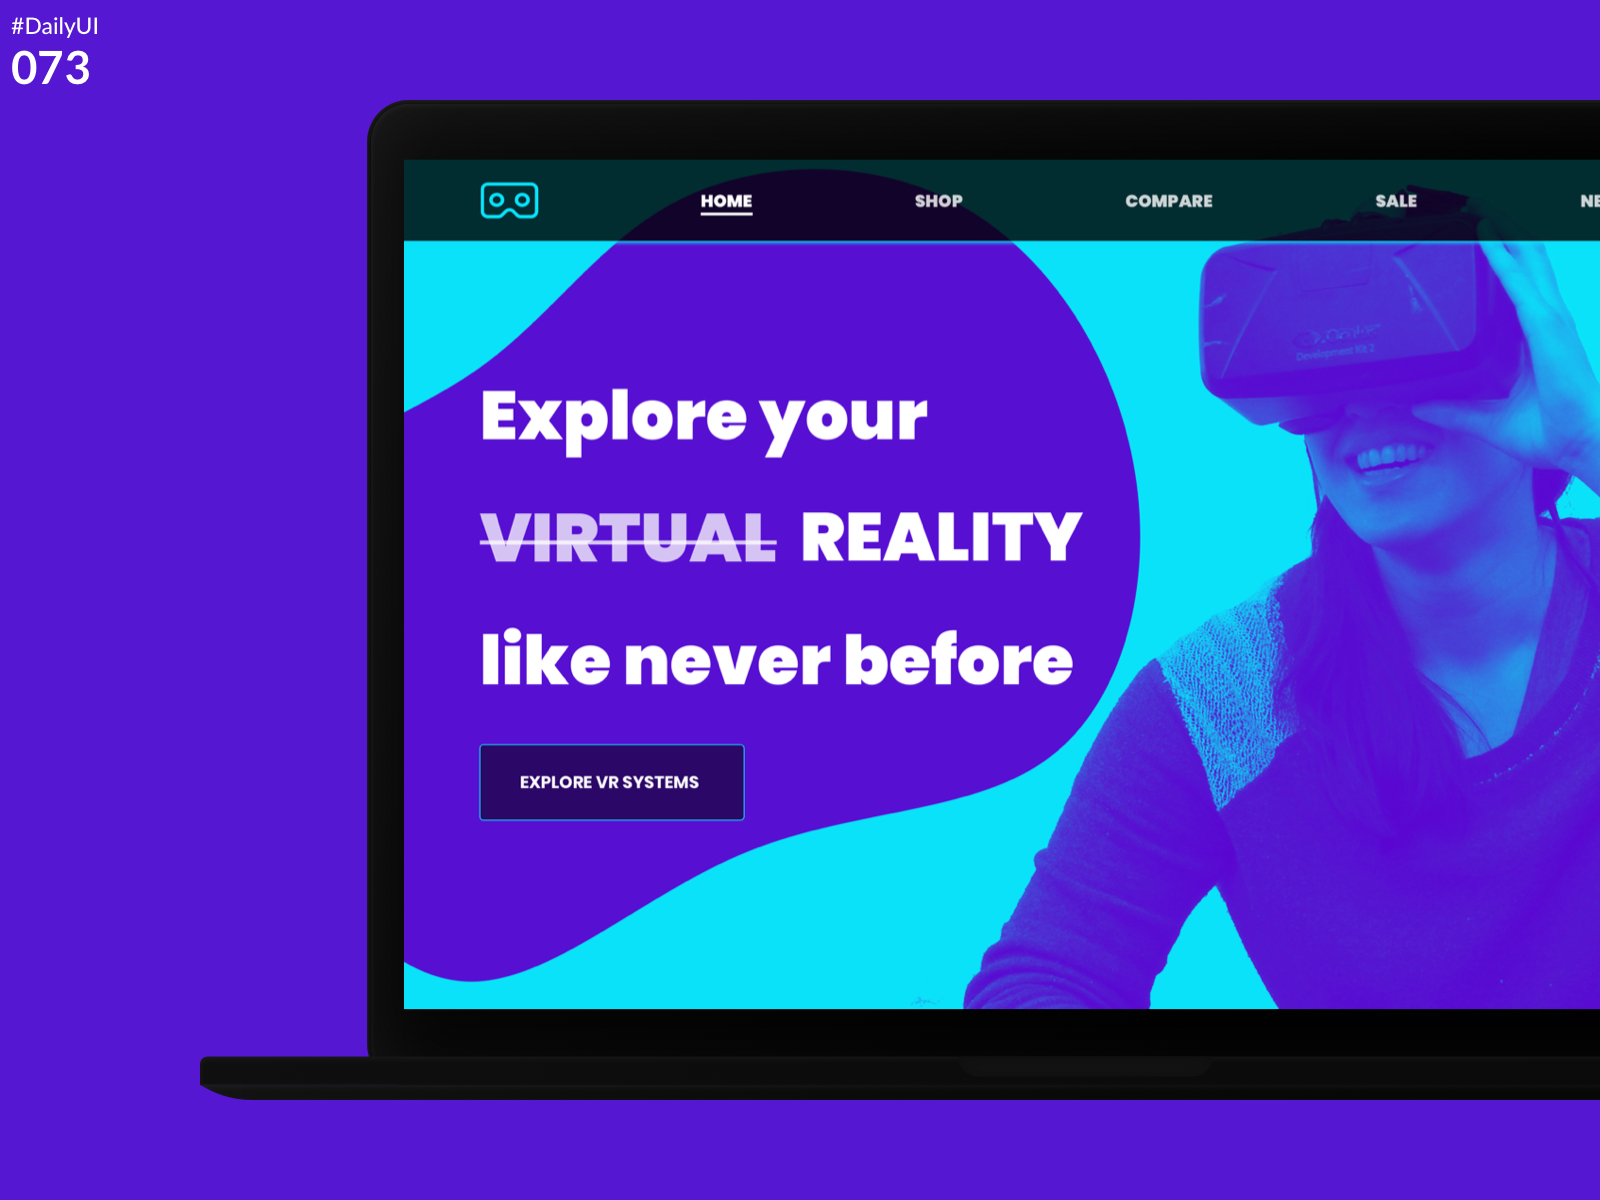 DailyUI Challenge 073 - Virtual Reality)